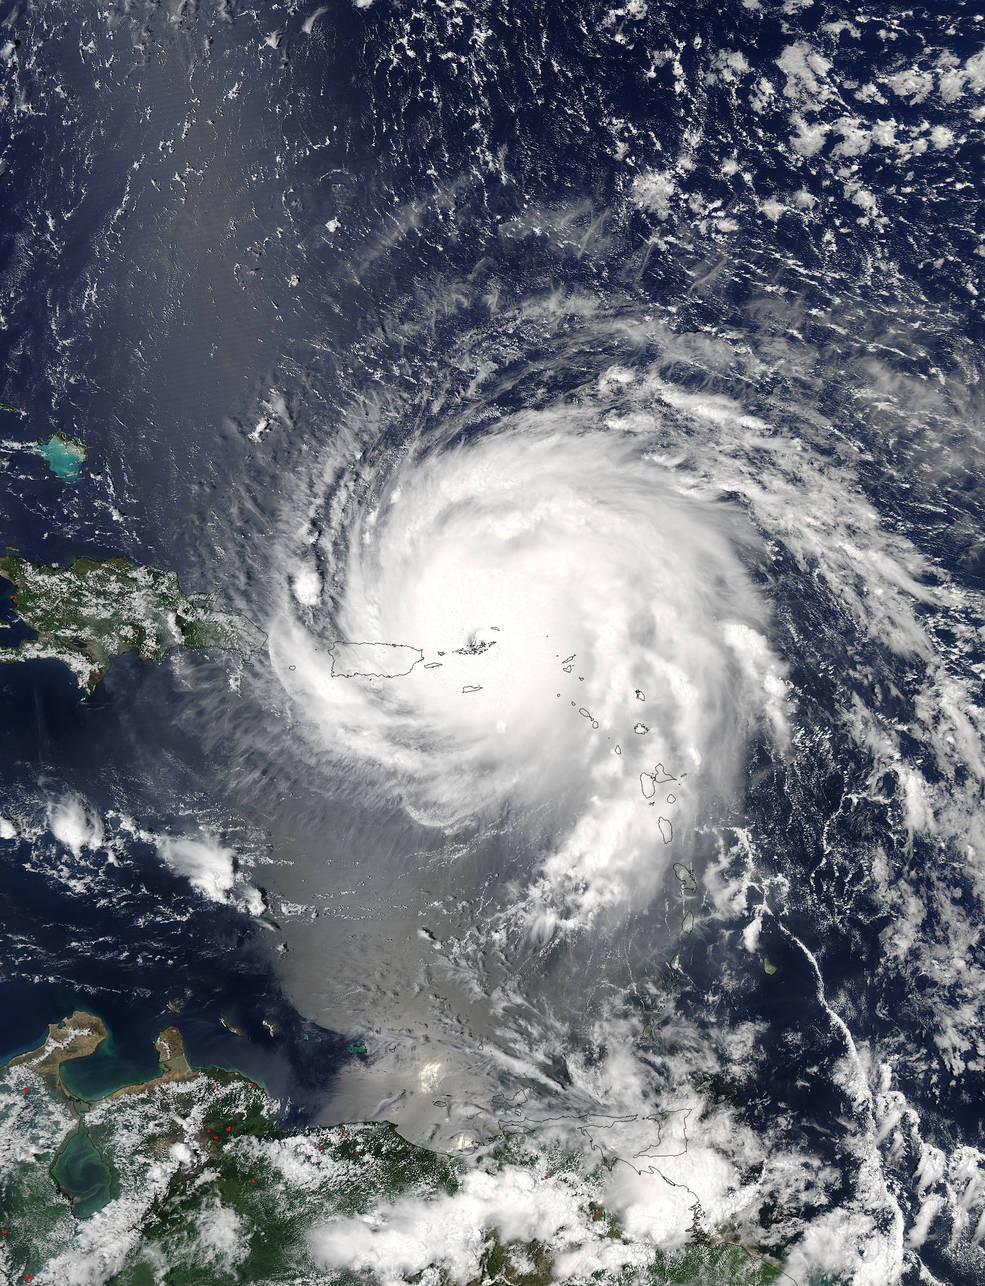 Furacão Irma sobre as Ilhas de Sotavento e Porto Rico, no dia 6 de setembro de 2017, às 13:45 da tarde (Foto: NASA Goddard MODIS Rapid Response Team)